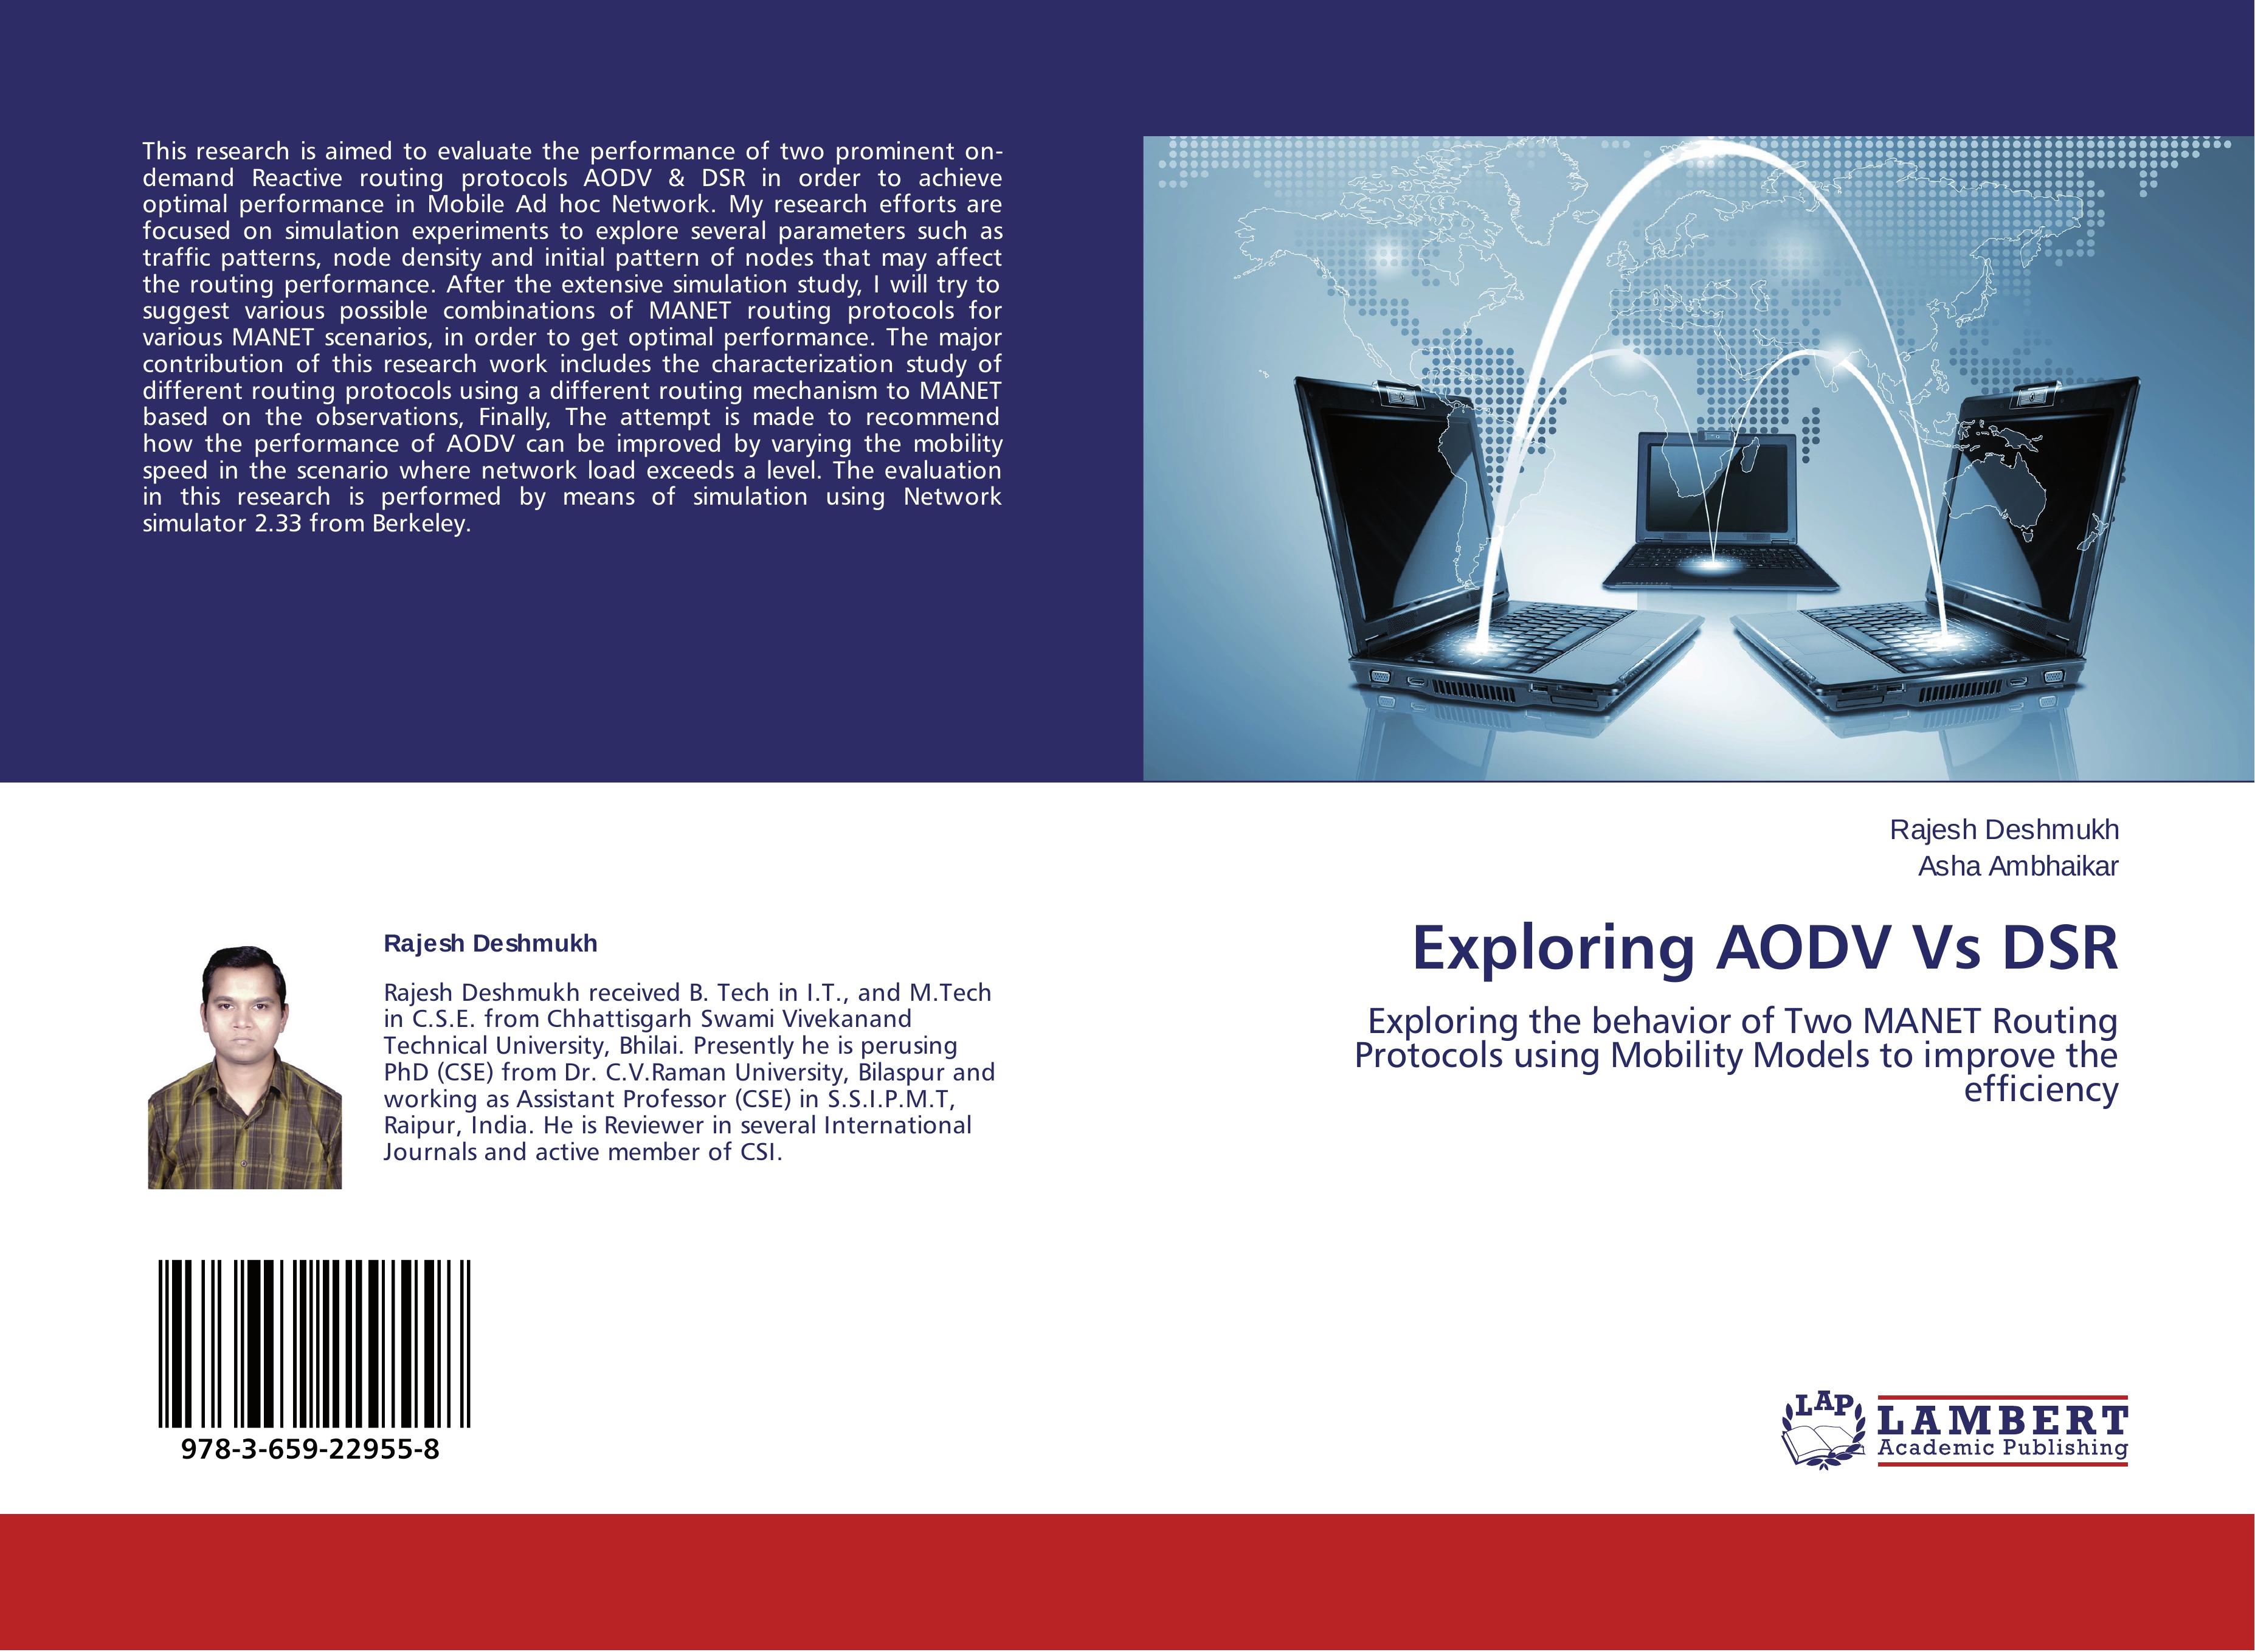 Exploring AODV Vs DSR - Rajesh Deshmukh Asha Ambhaikar